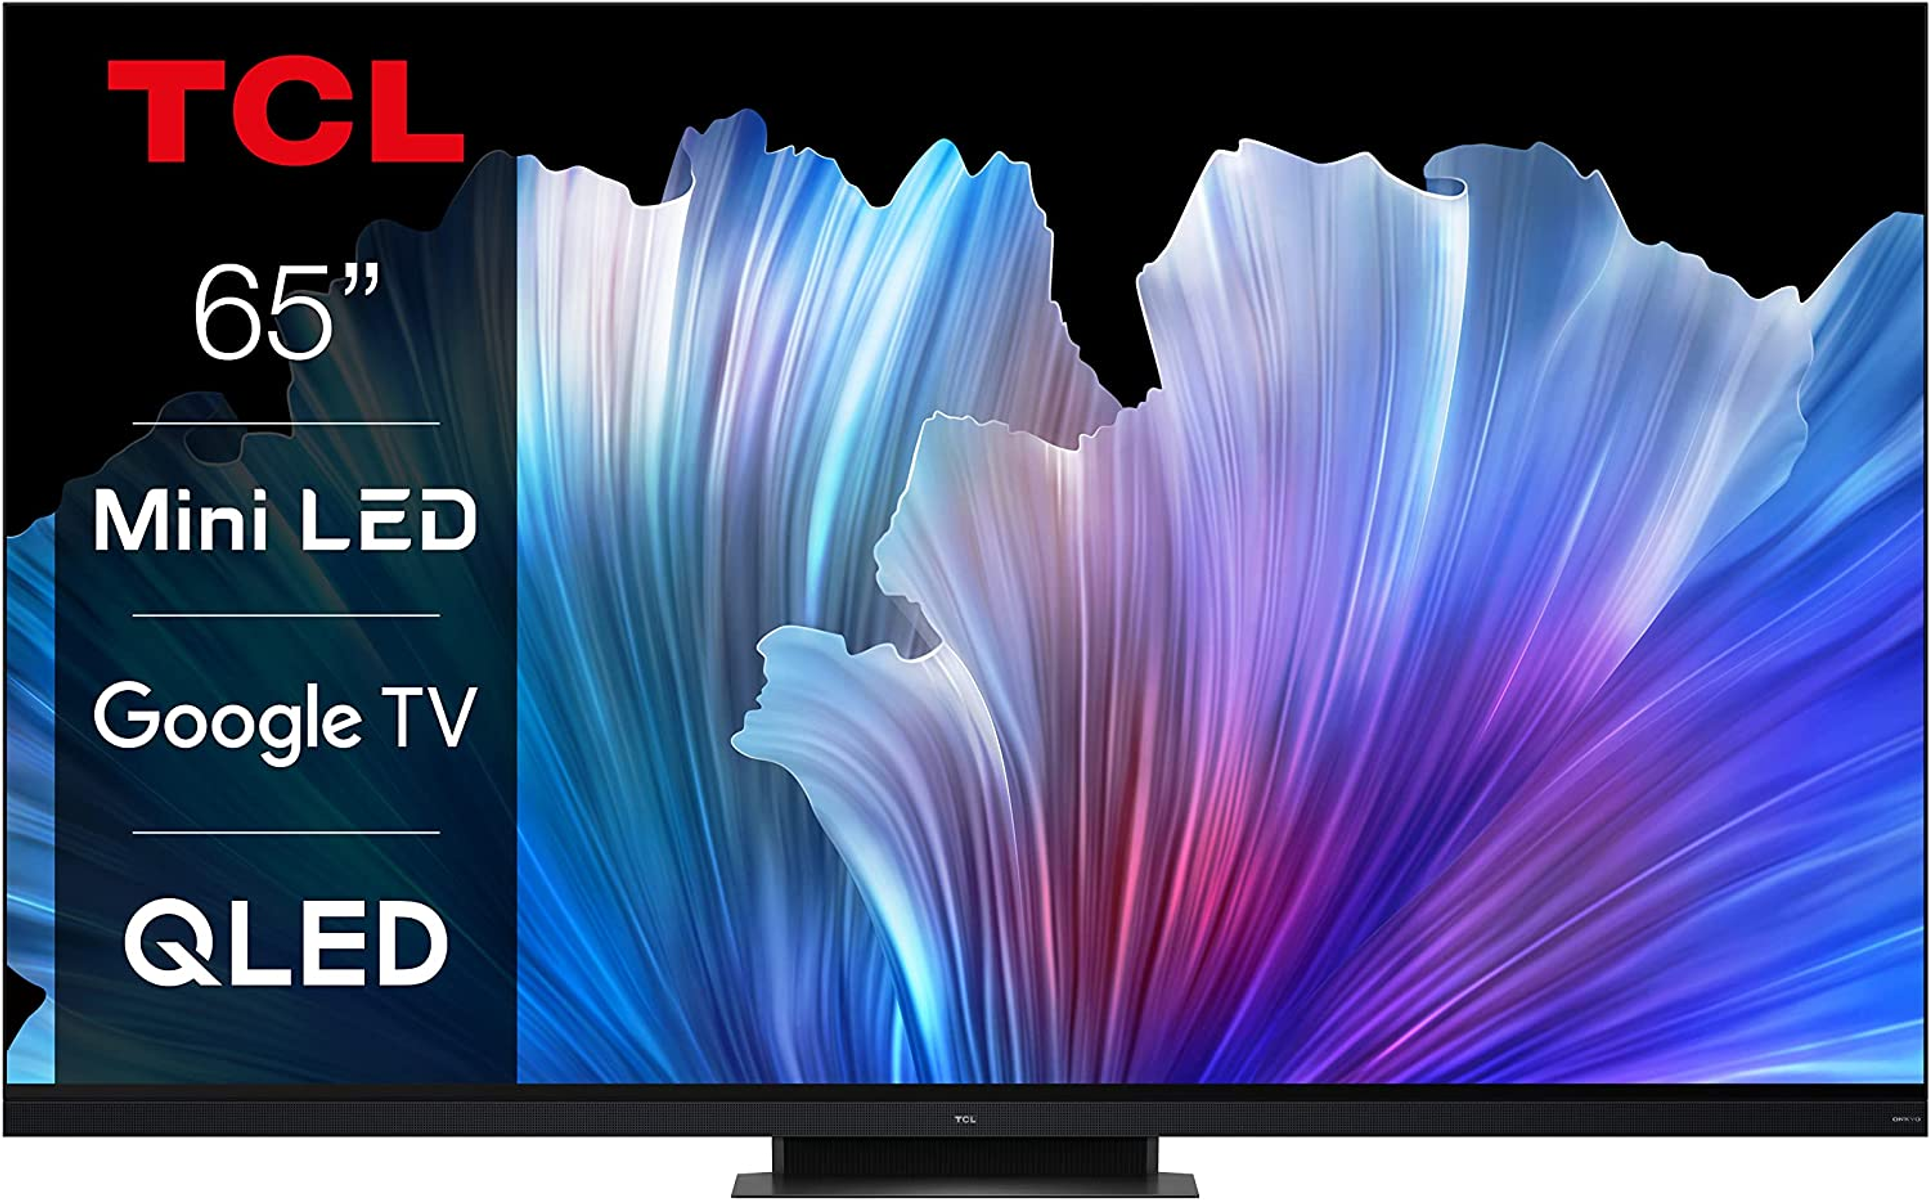 TCL (Flat, cm, Zoll 65 935 165 UHD 65 C TV) Google LED / TV 4K,